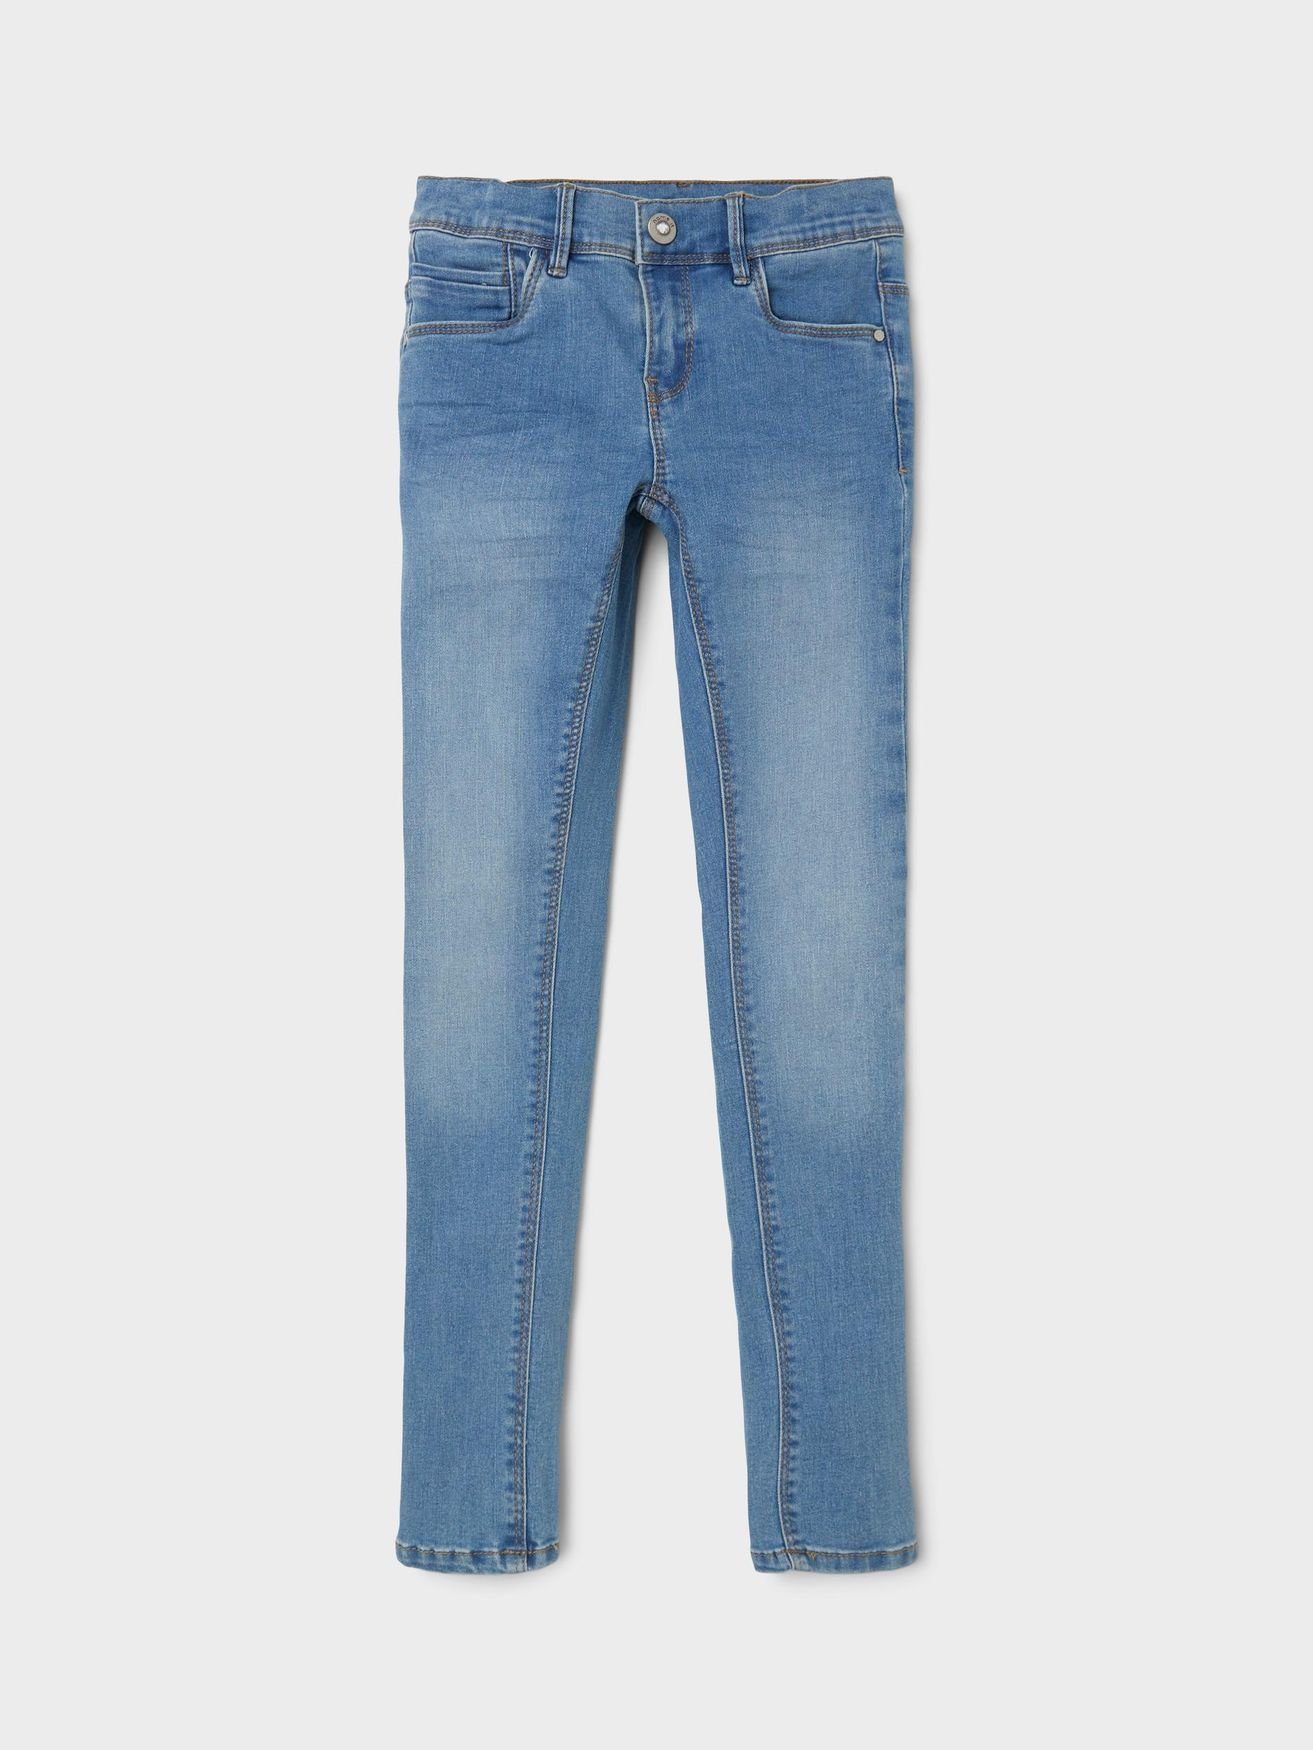 Skinny Hose in Regular-fit-Jeans Jeans Hellblau It NKFPOLLY Name 5546 Denim